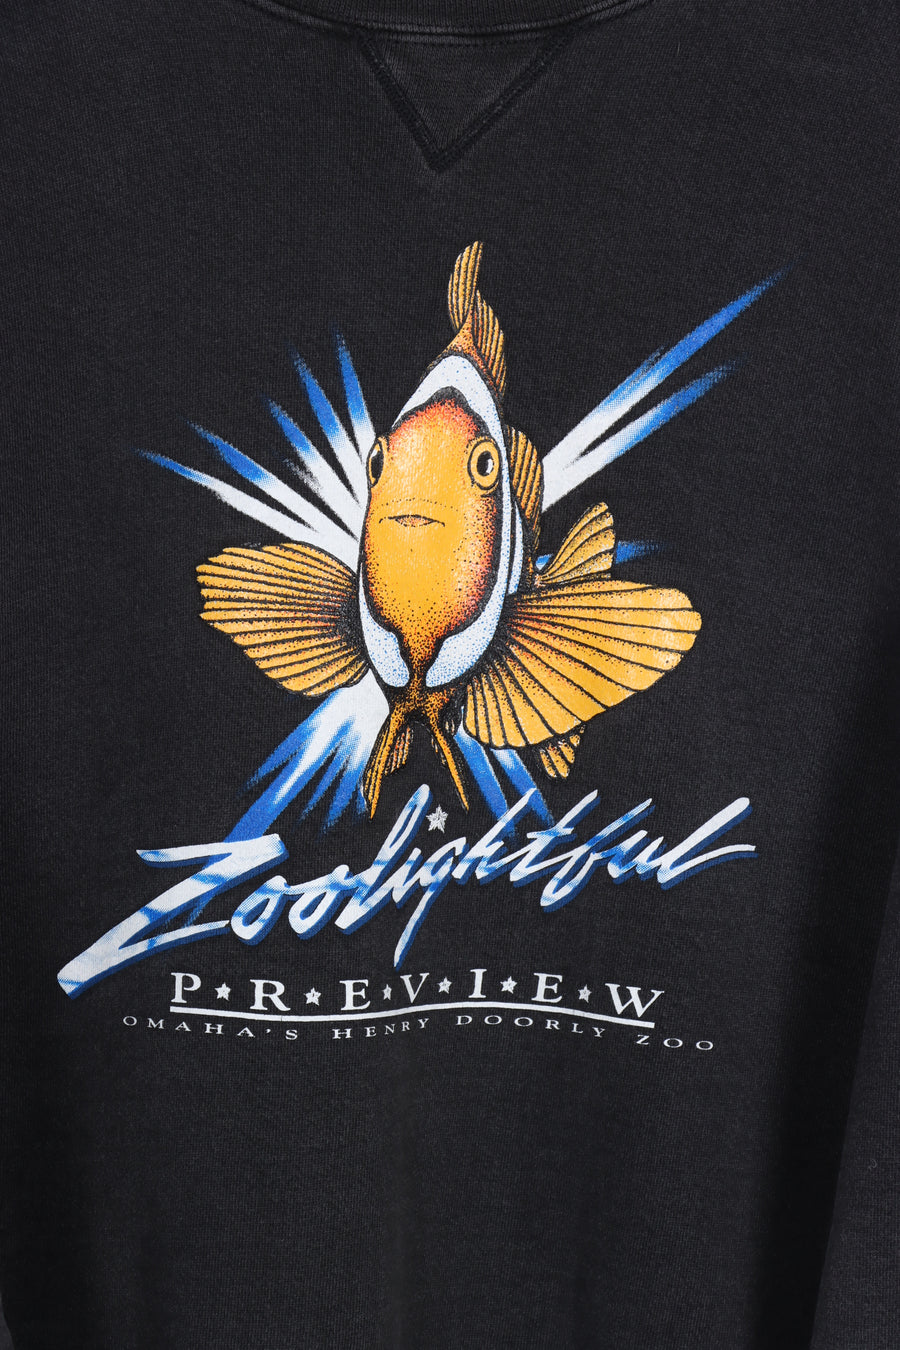 Clown Fish "Zoolightful Preview" Black Sweatshirt (XL-XXL)